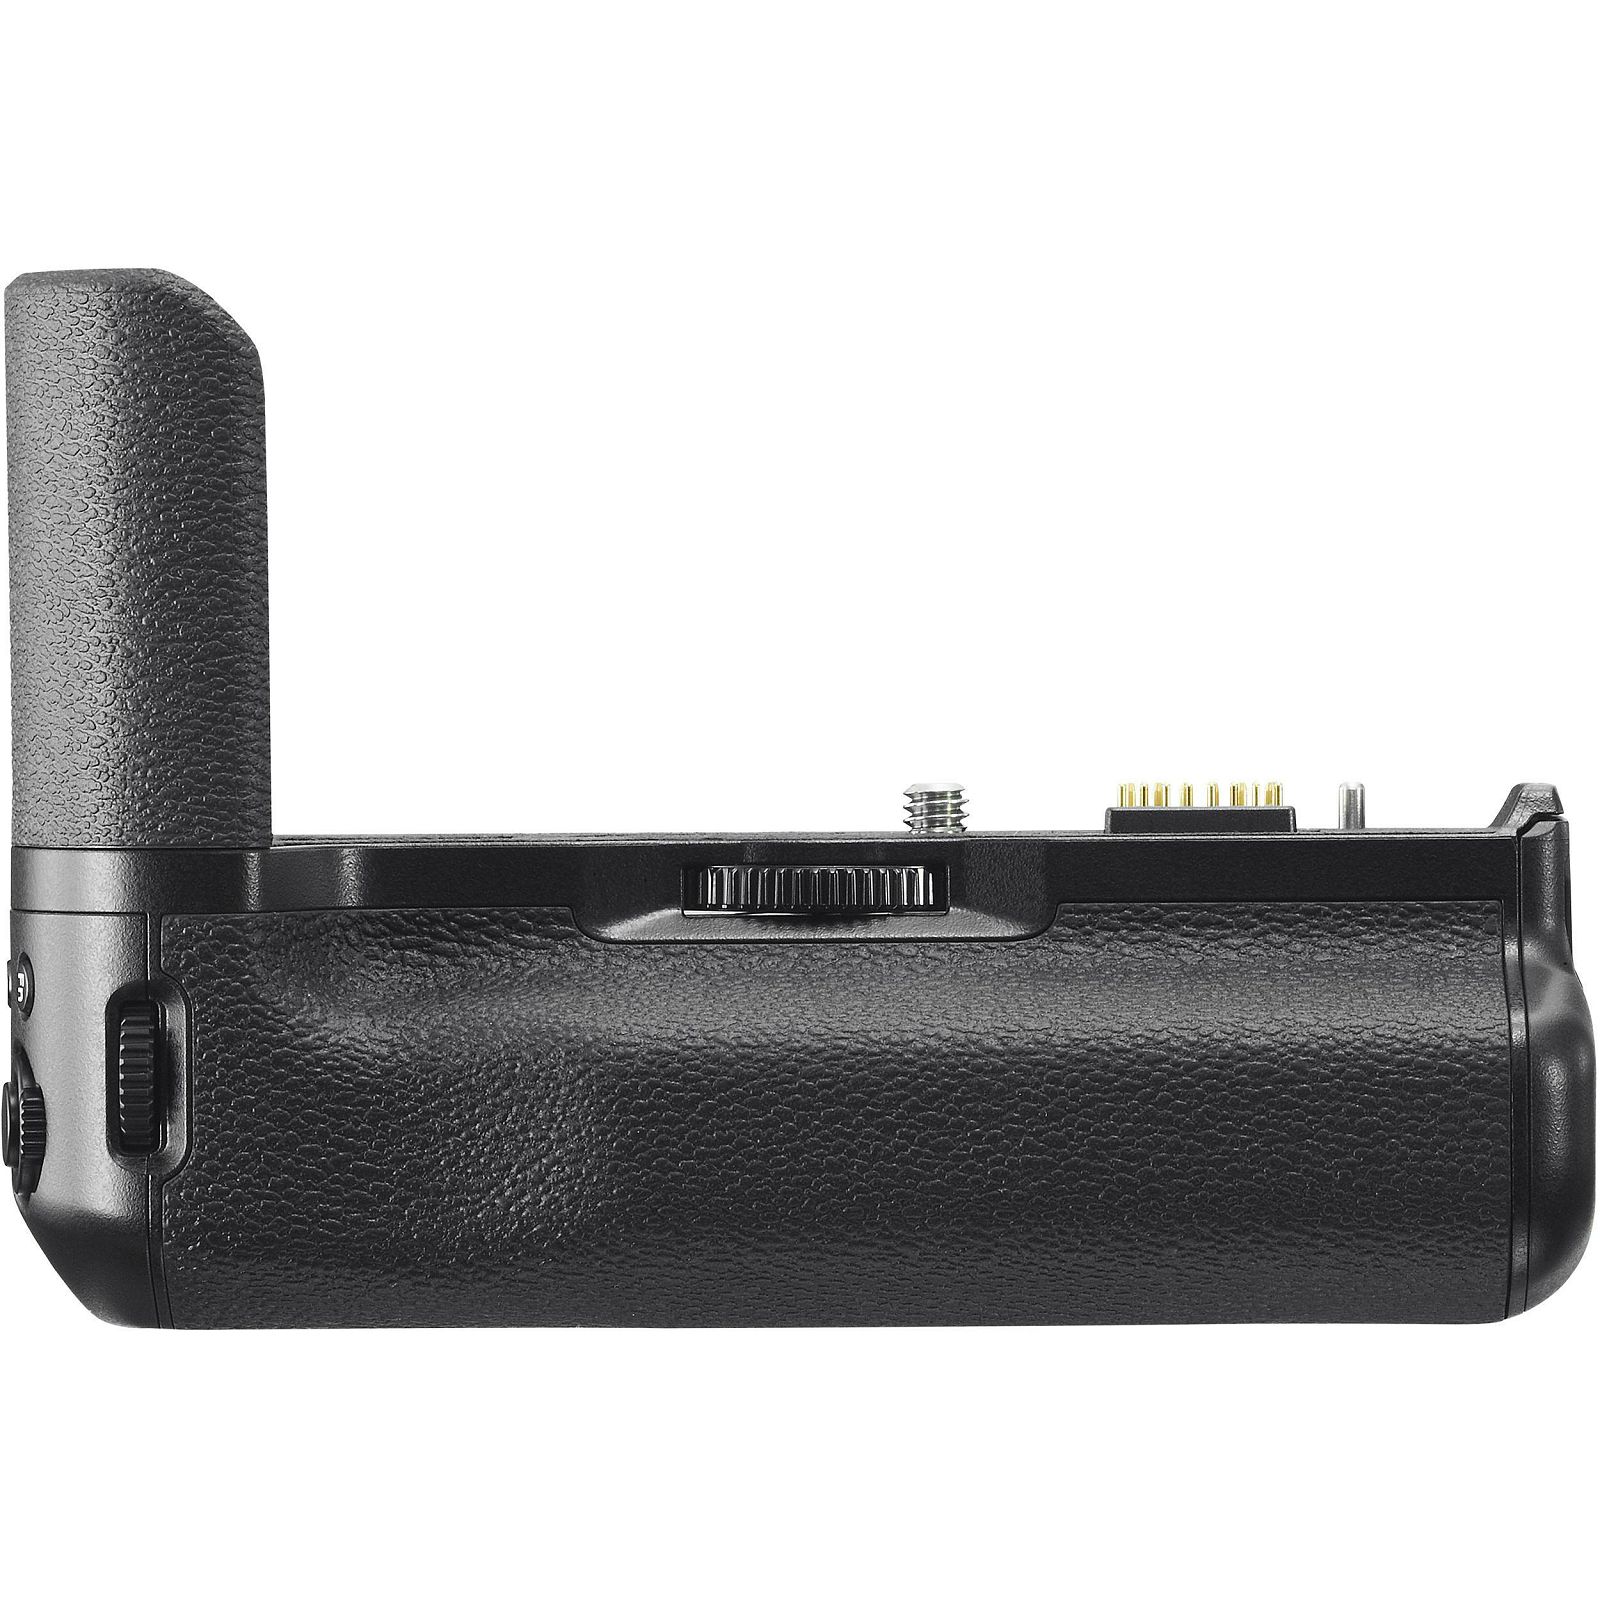 Fujifilm VPB-XT2 Vertical Power Booster Battery Grip držač baterija za Fuji X-T2